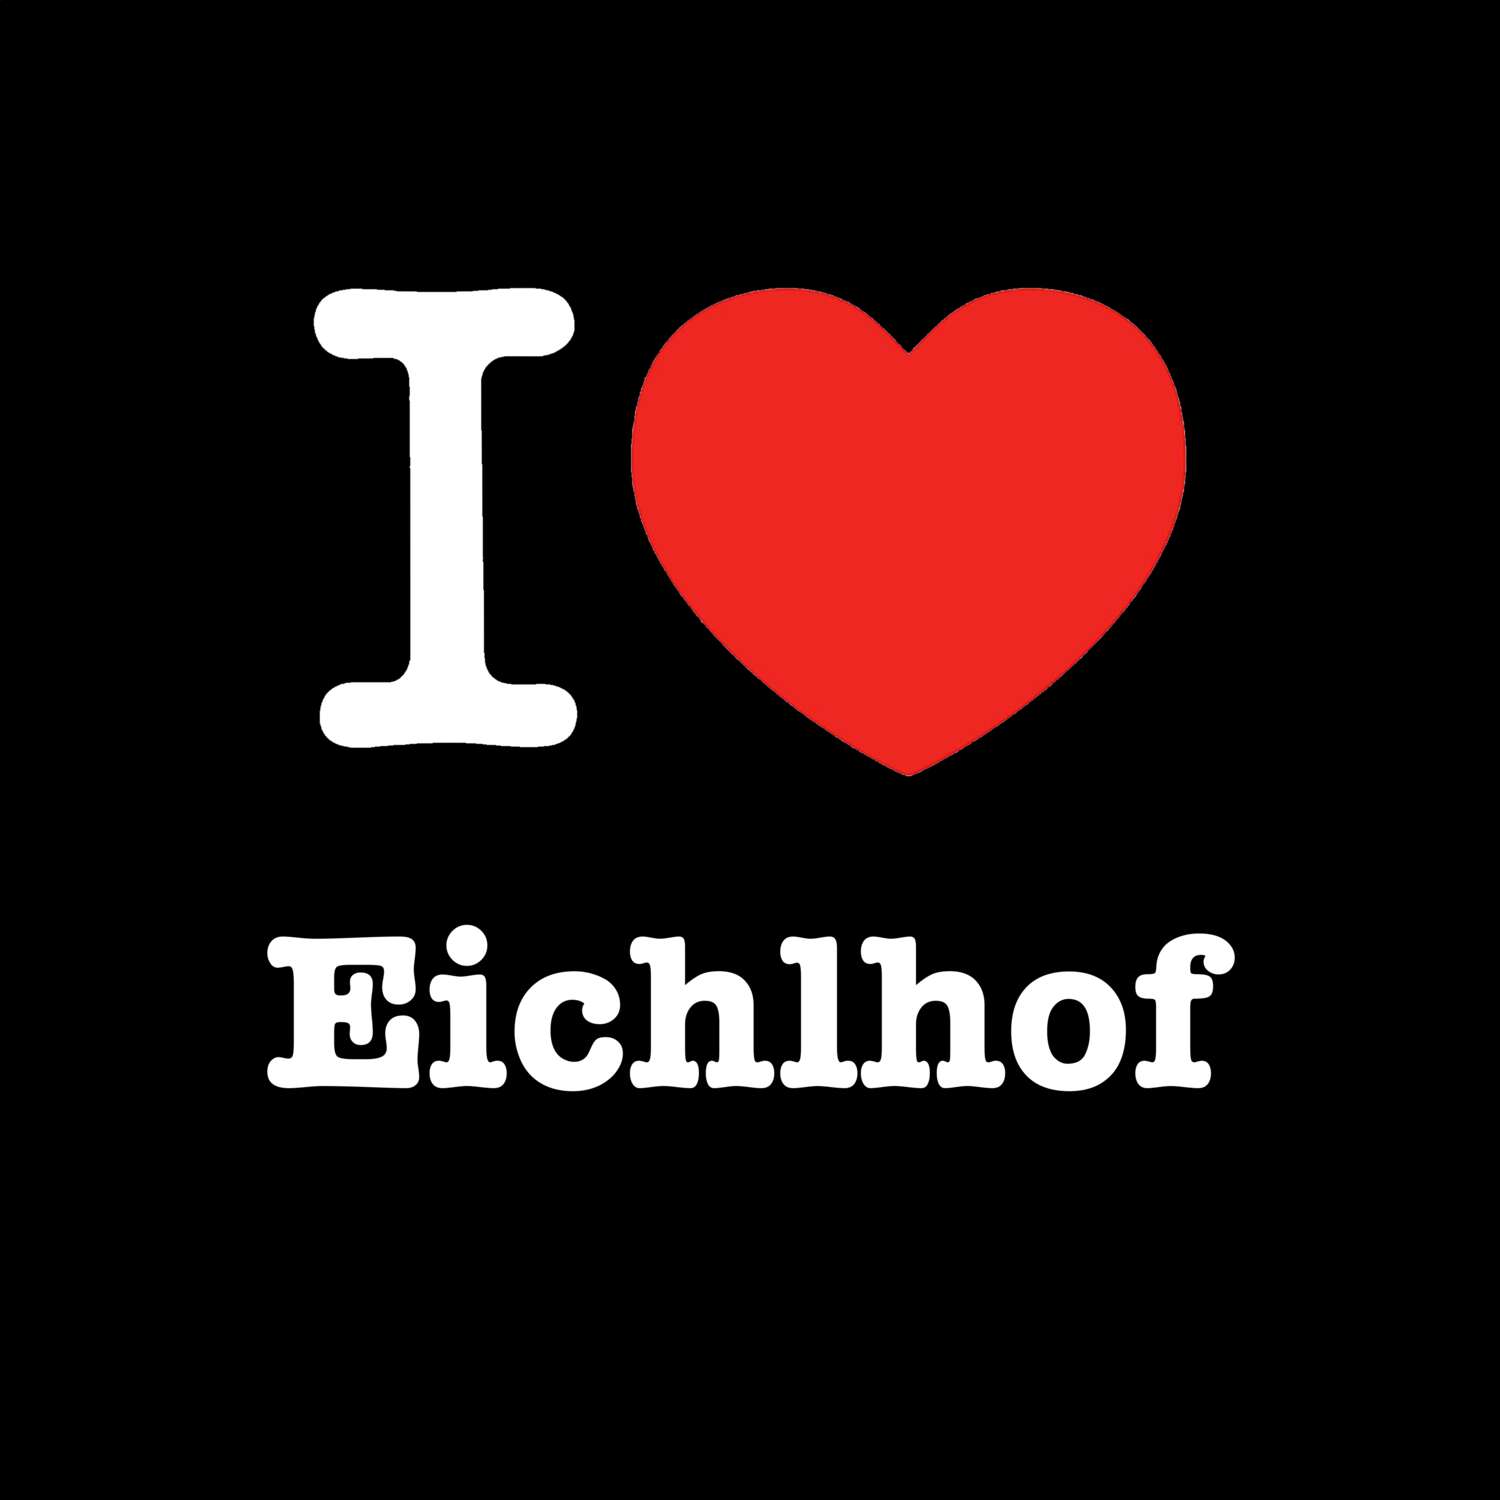 Eichlhof T-Shirt »I love«